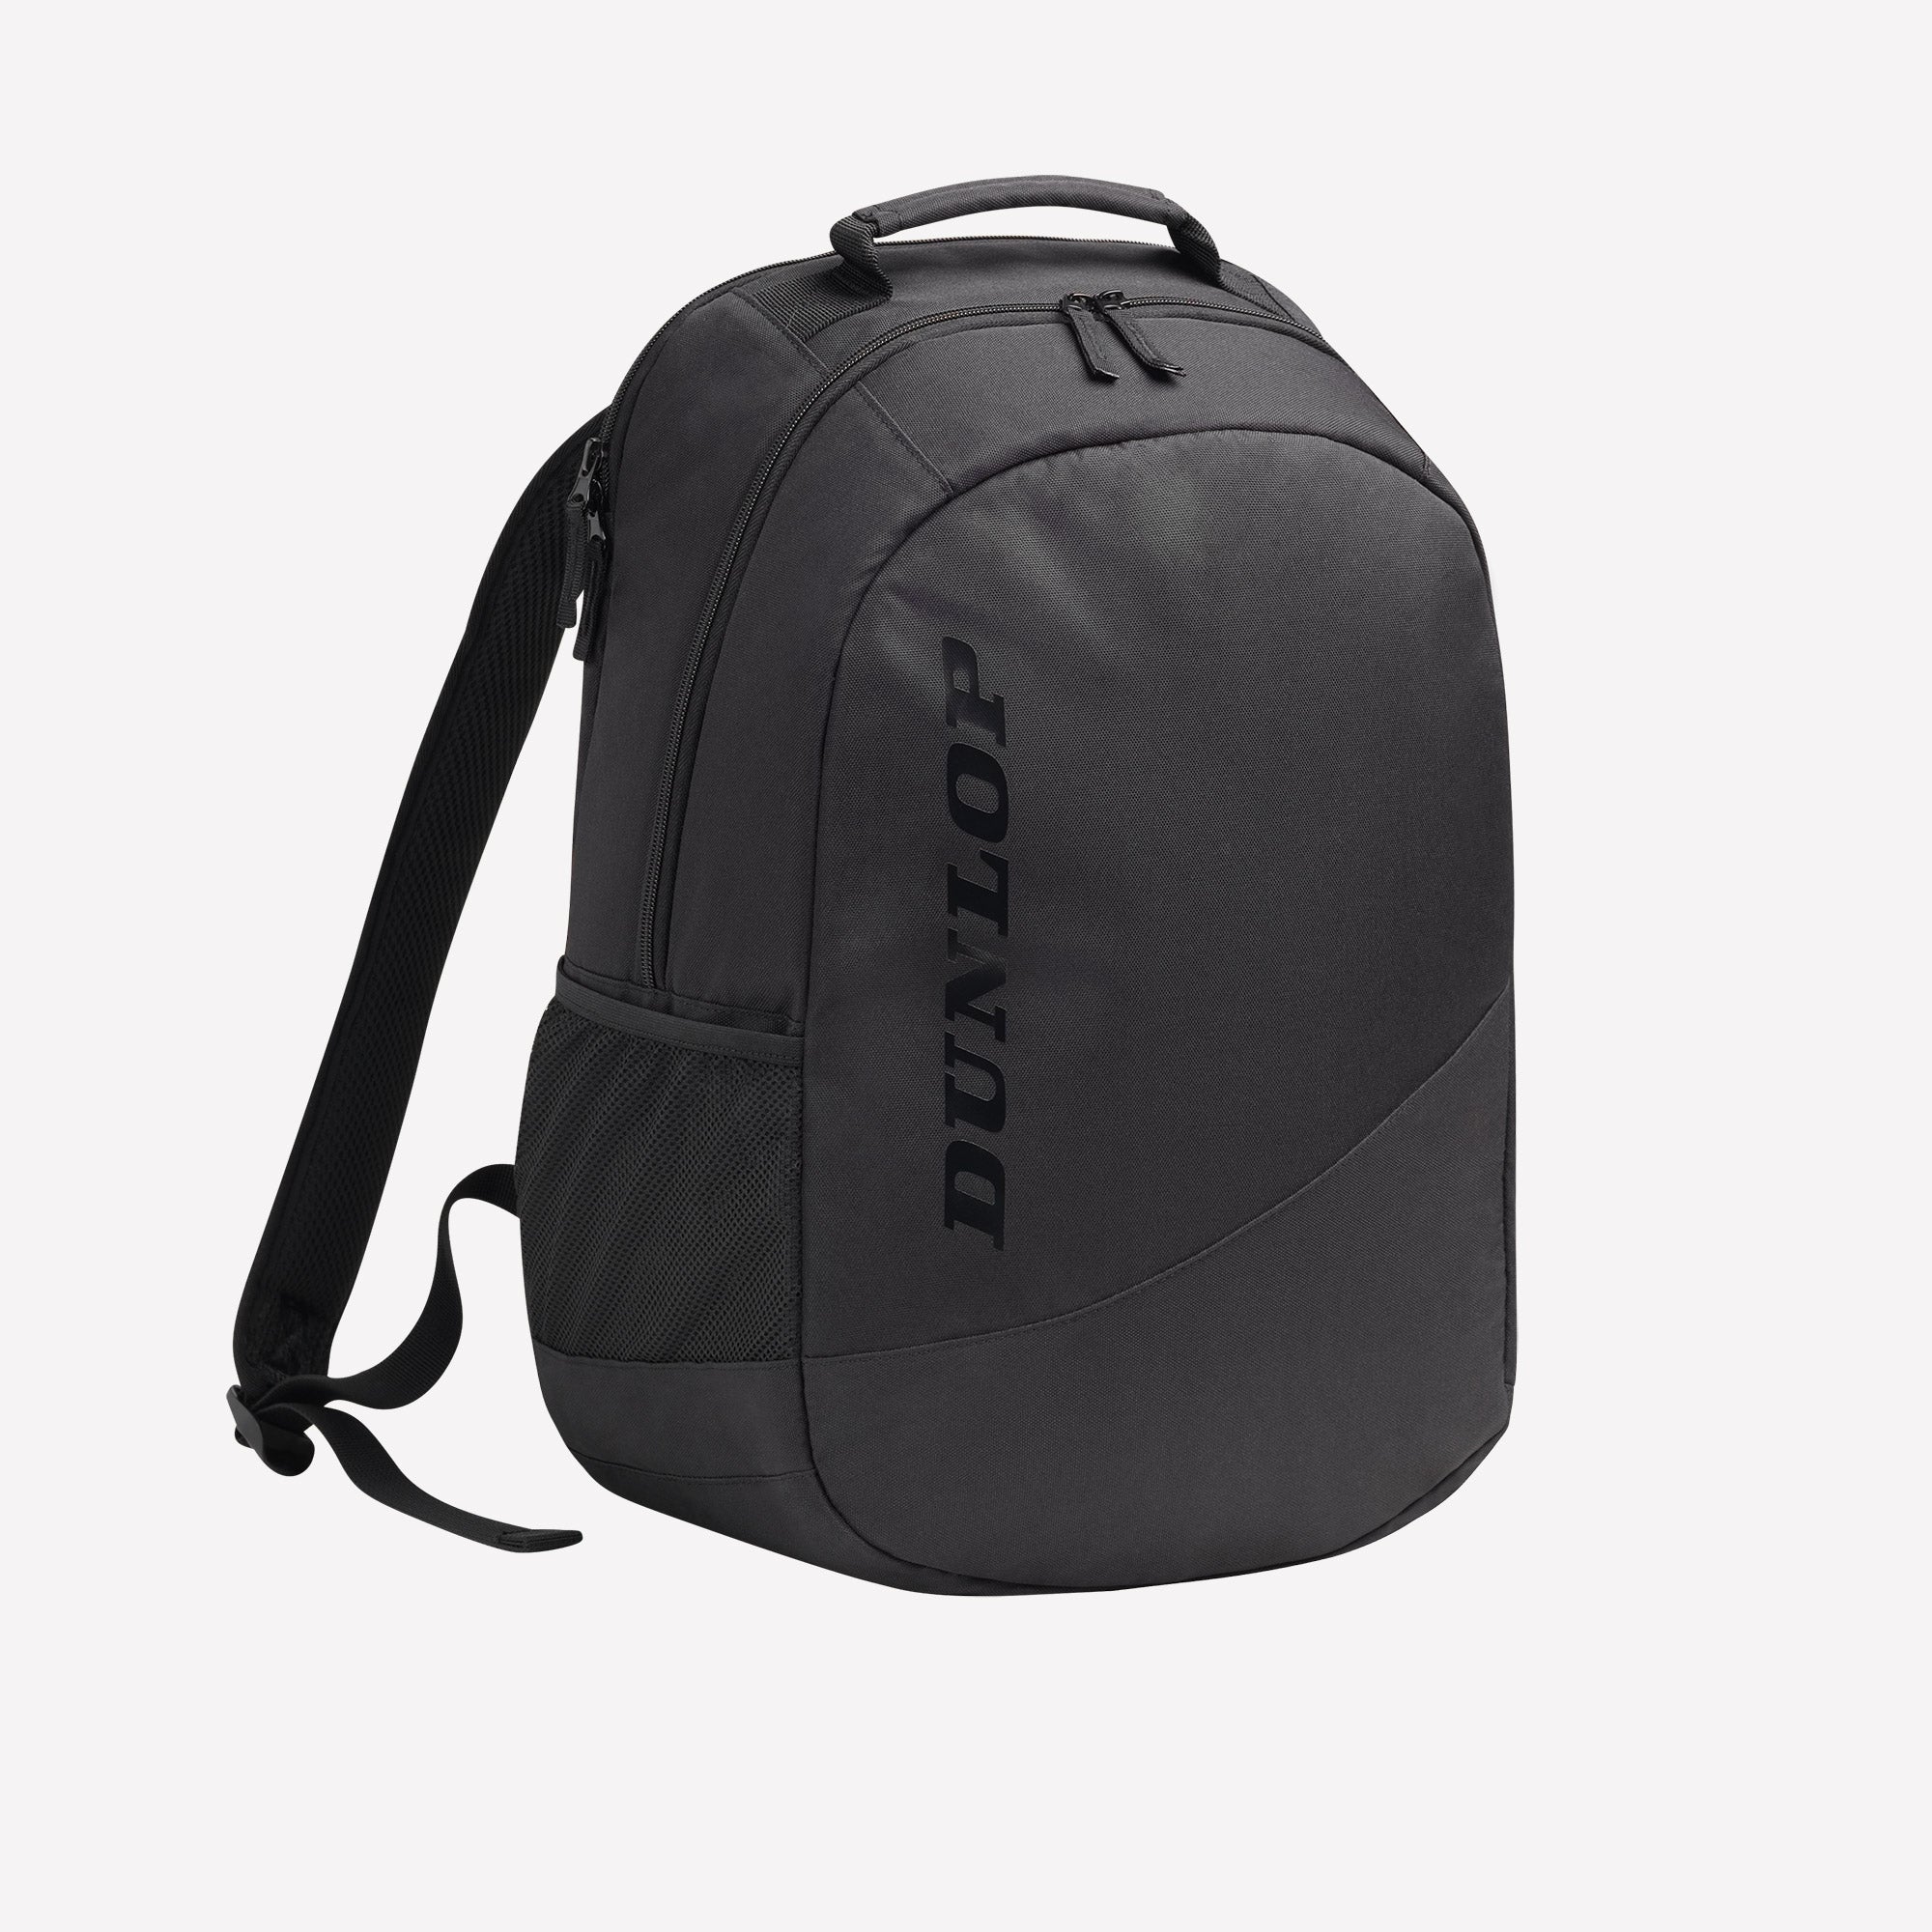 Dunlop CX Club Tennis Backpack Black (1)